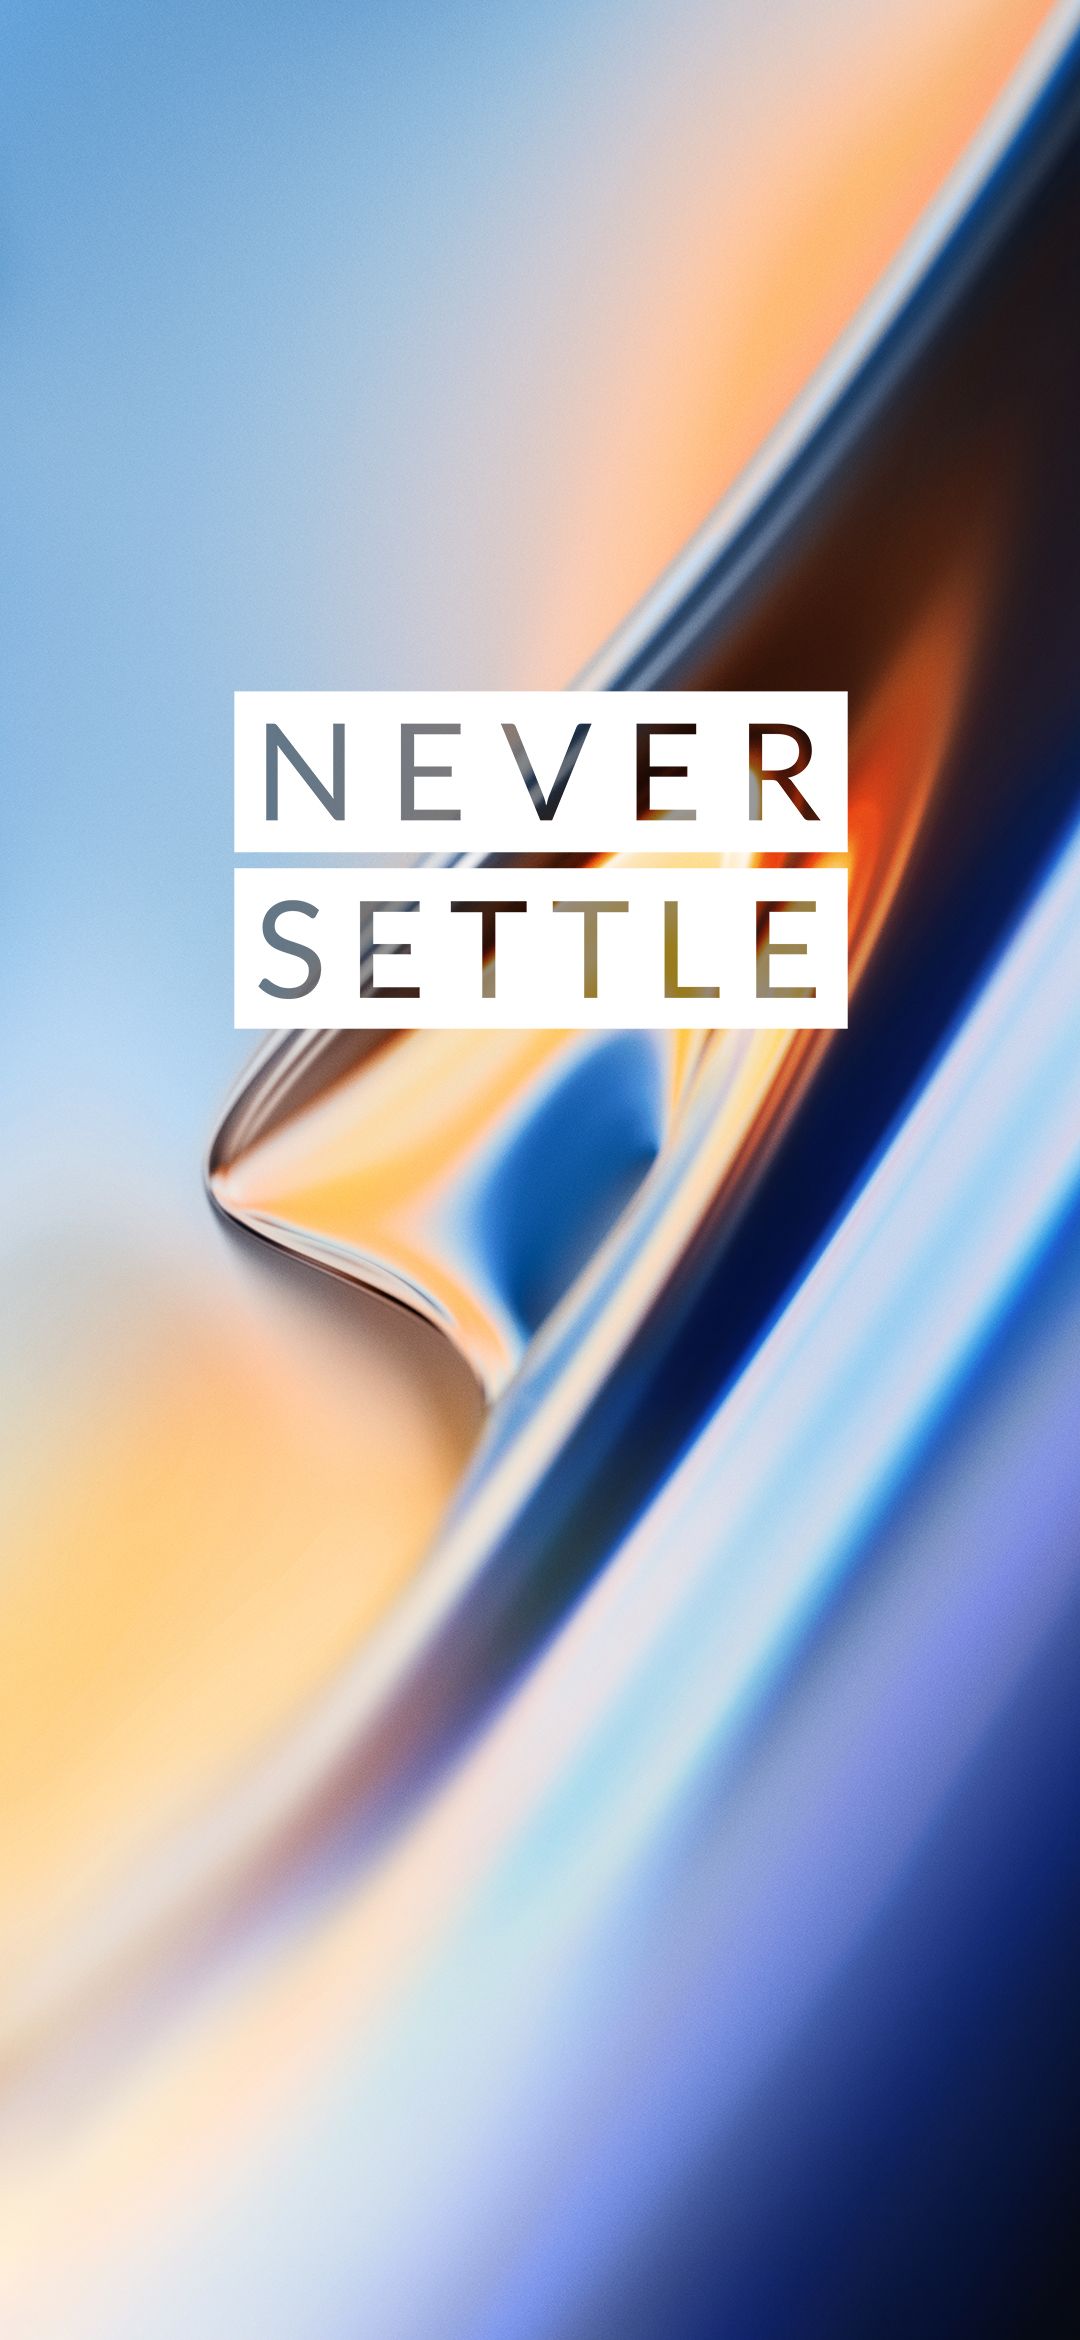 OnePlus 6T Wallpaper (FHD, 4K, Never Settle). Never settle